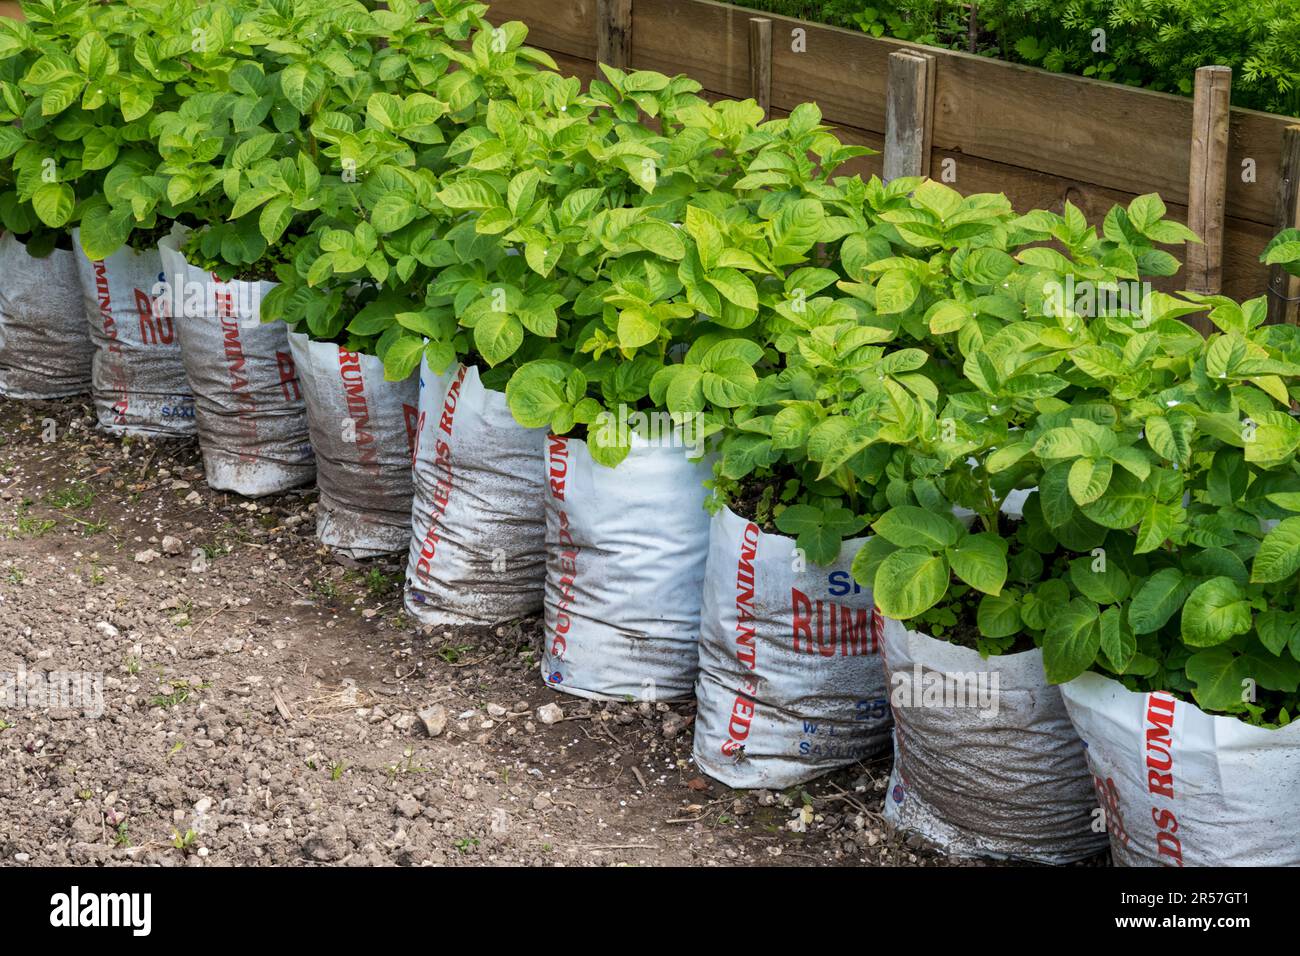 Patate coltivate in sacchi di plastica a metà per risparmiare spazio e sforzo nell'orto o nell'assegnazione. Foto Stock